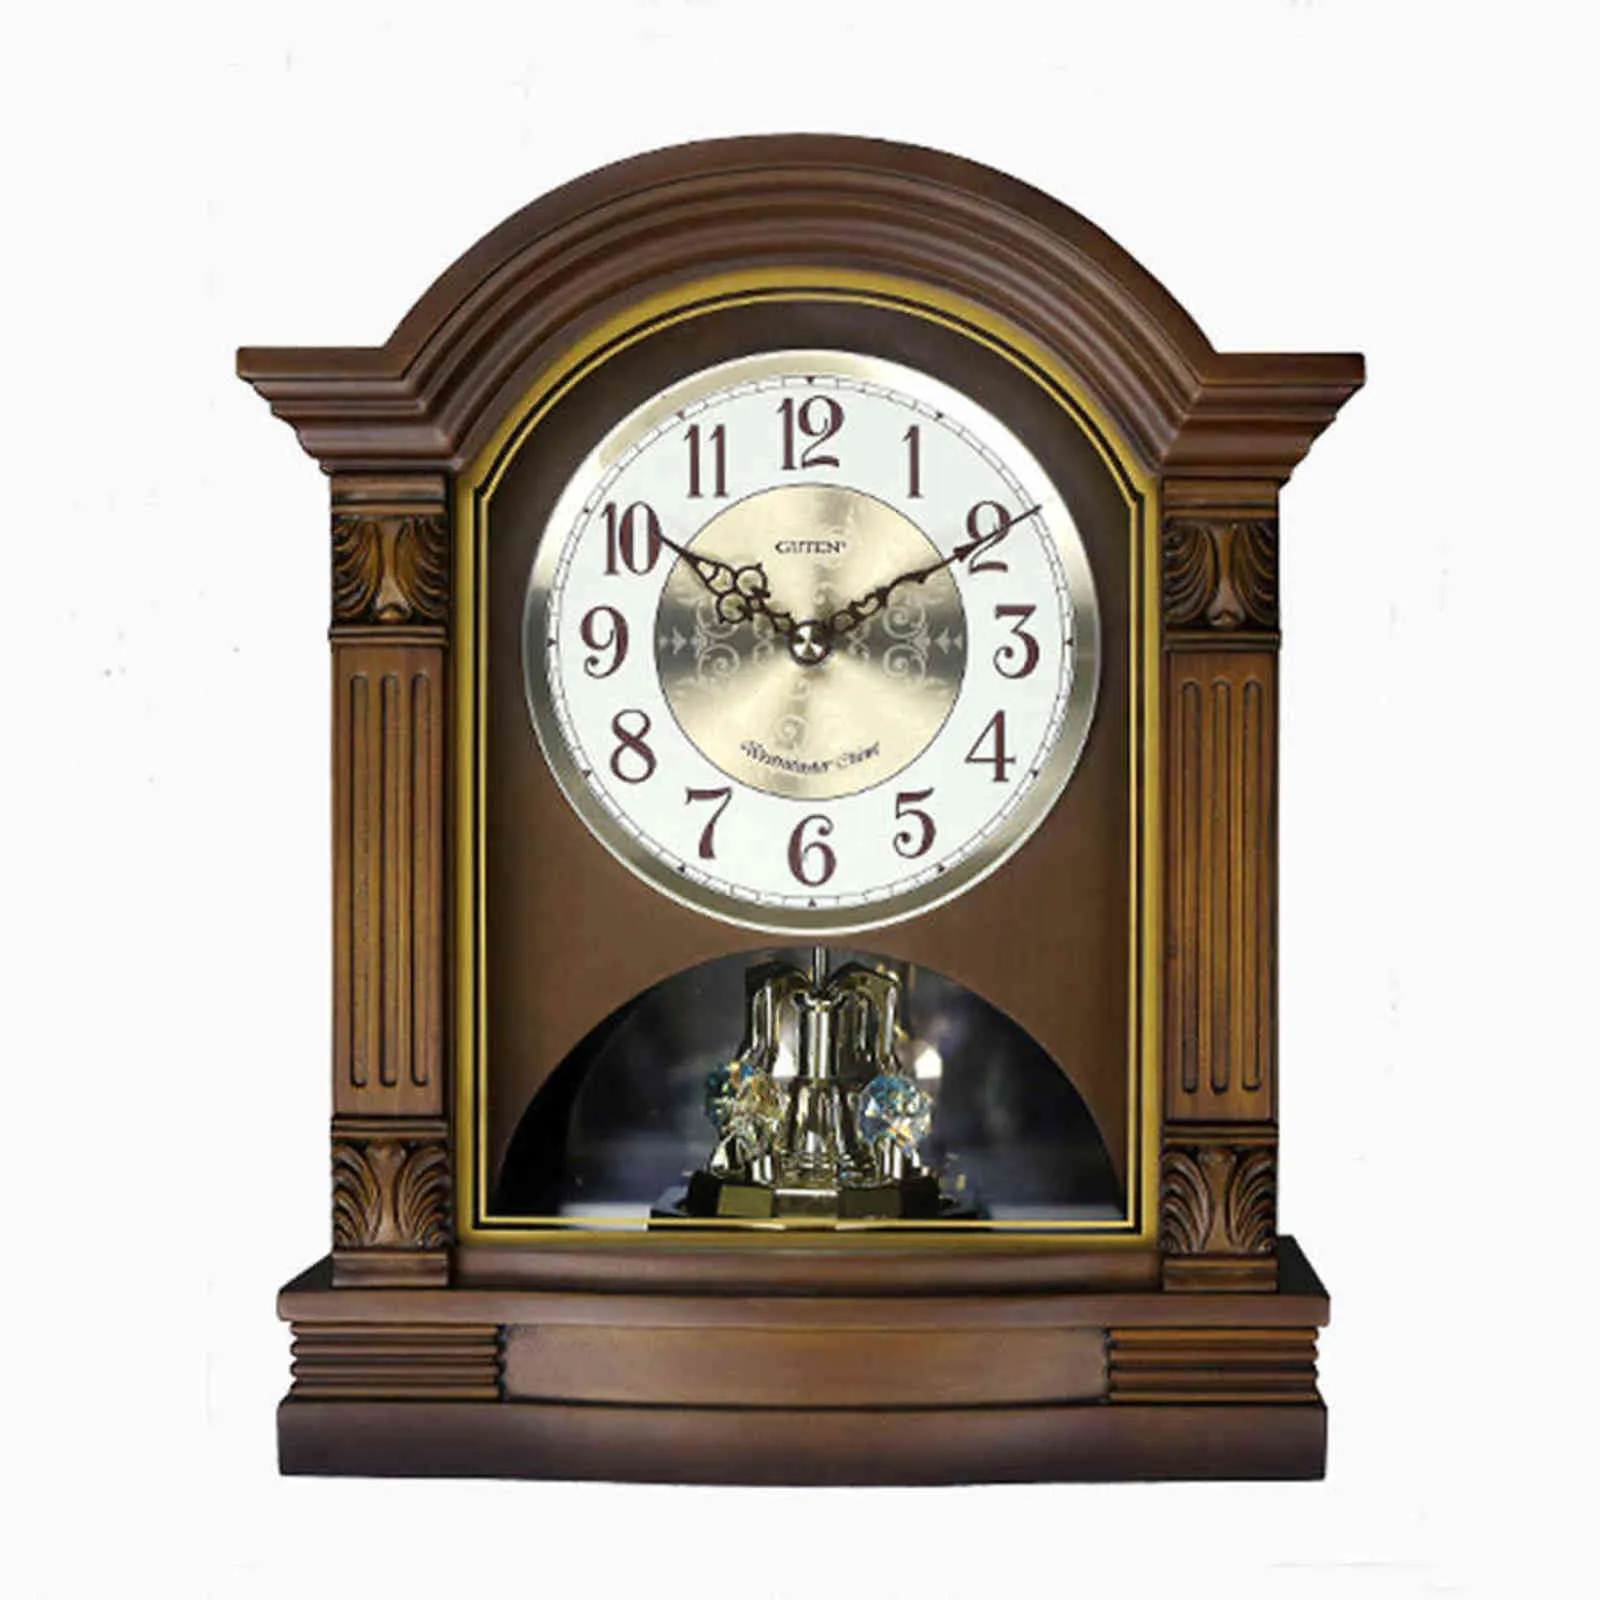 ソリッドウッドタイムキーピングヨーロッパのテーブルクロックミュート音楽クロックレトロリビングルームベッドルームデスクウォッチ木製時計ホーム装飾211112